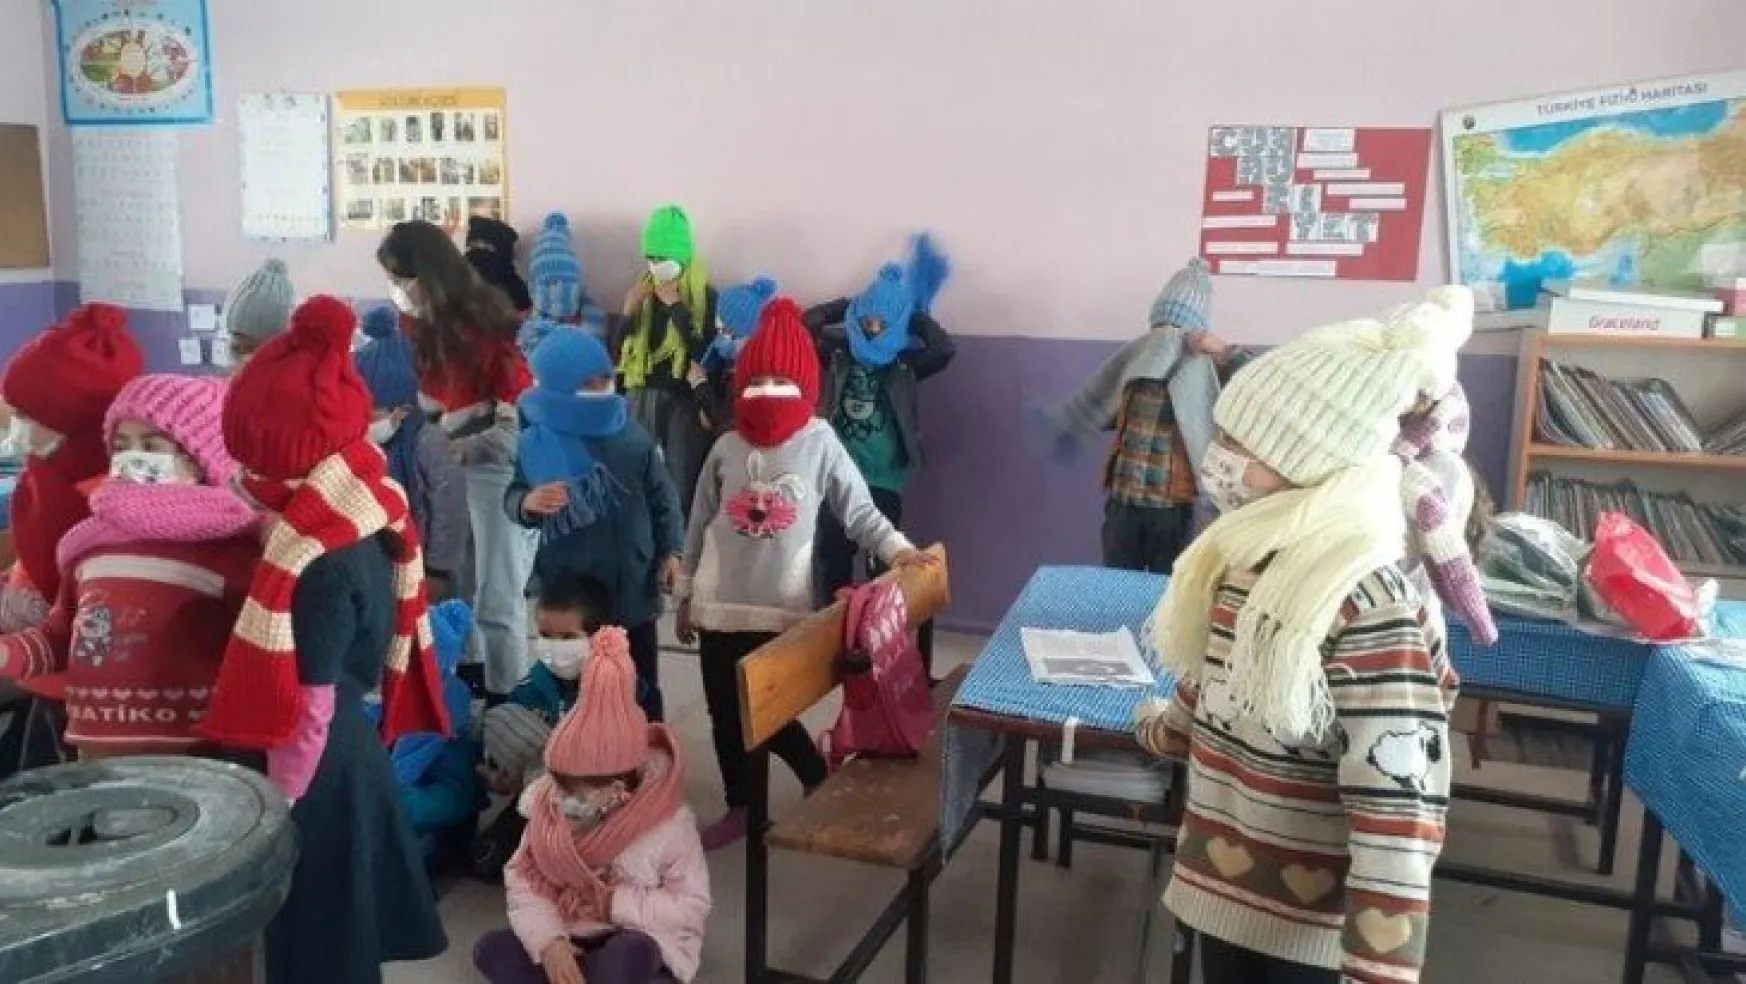 Öğretmenler elleriyle ördü, Türkiye'nin en soğuk ilçesine gönderdi